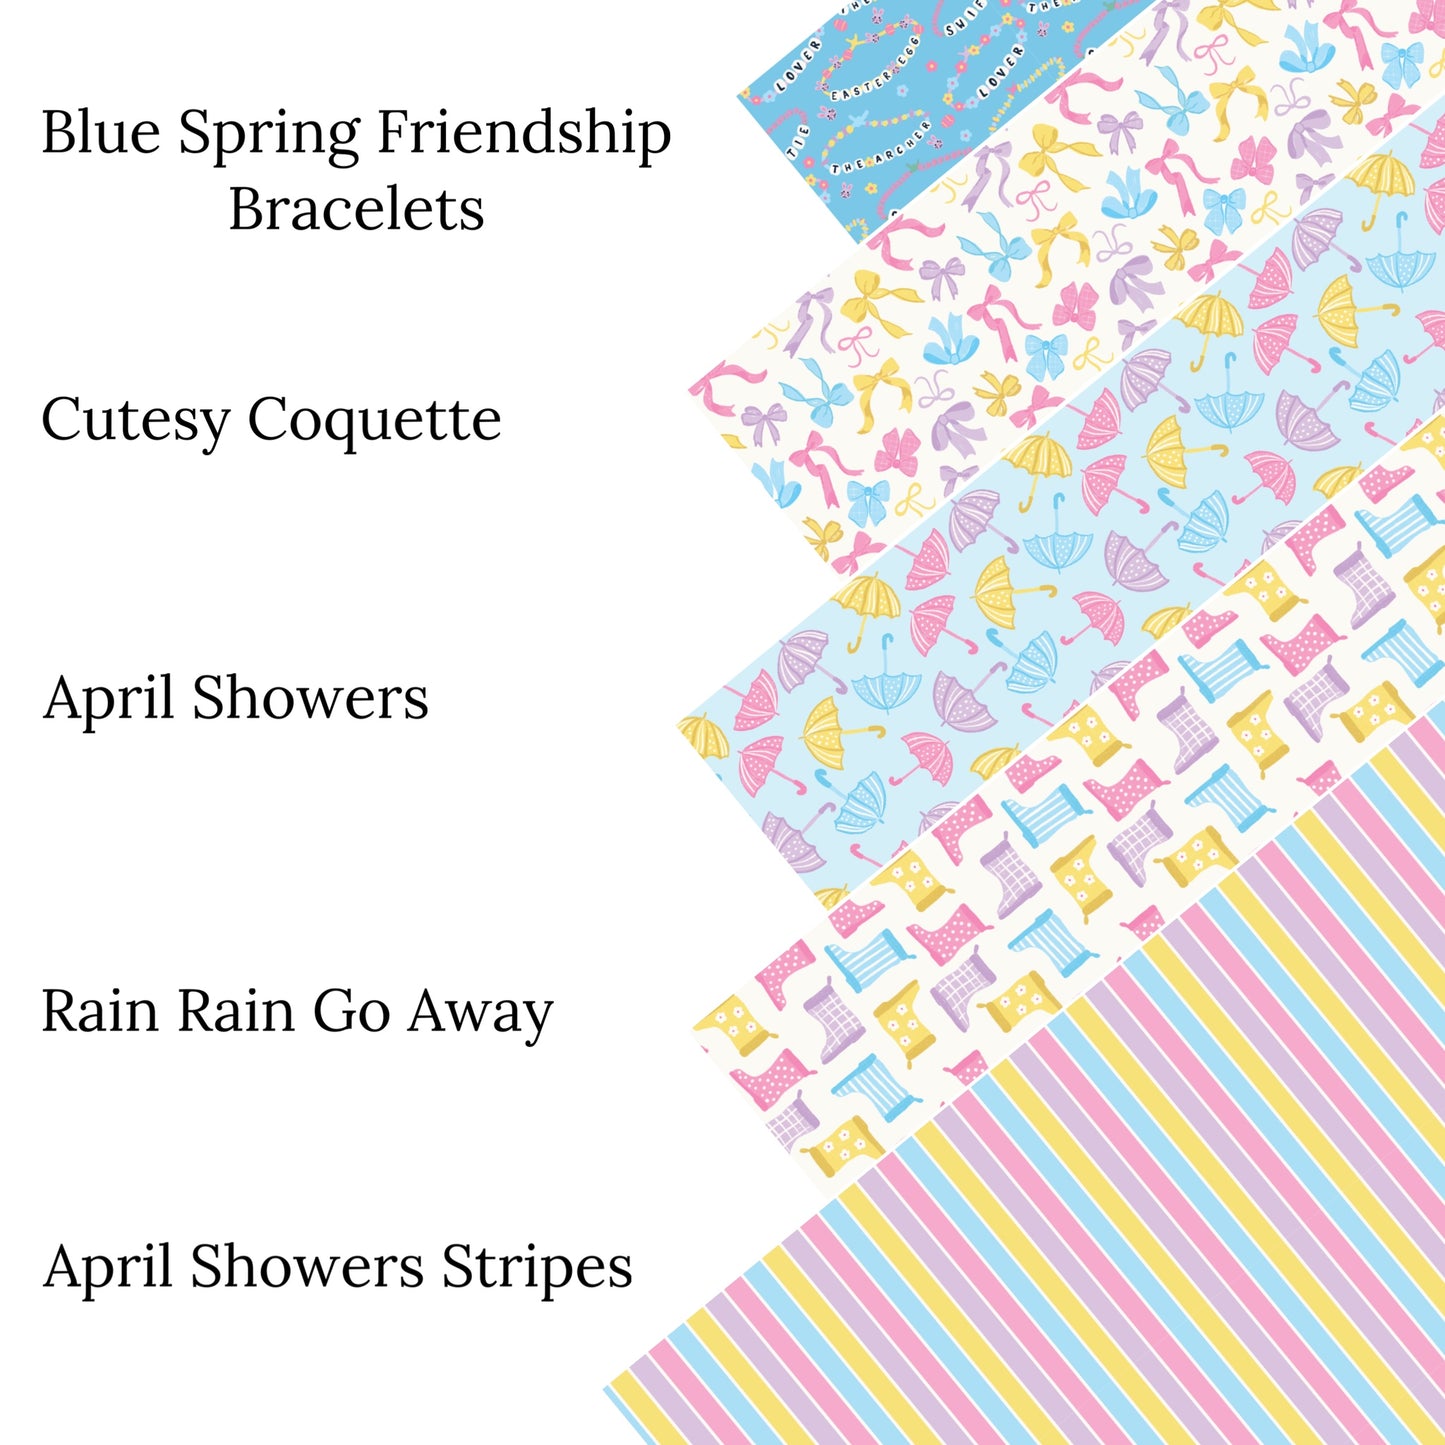 April Showers Stripes Faux Leather Sheets